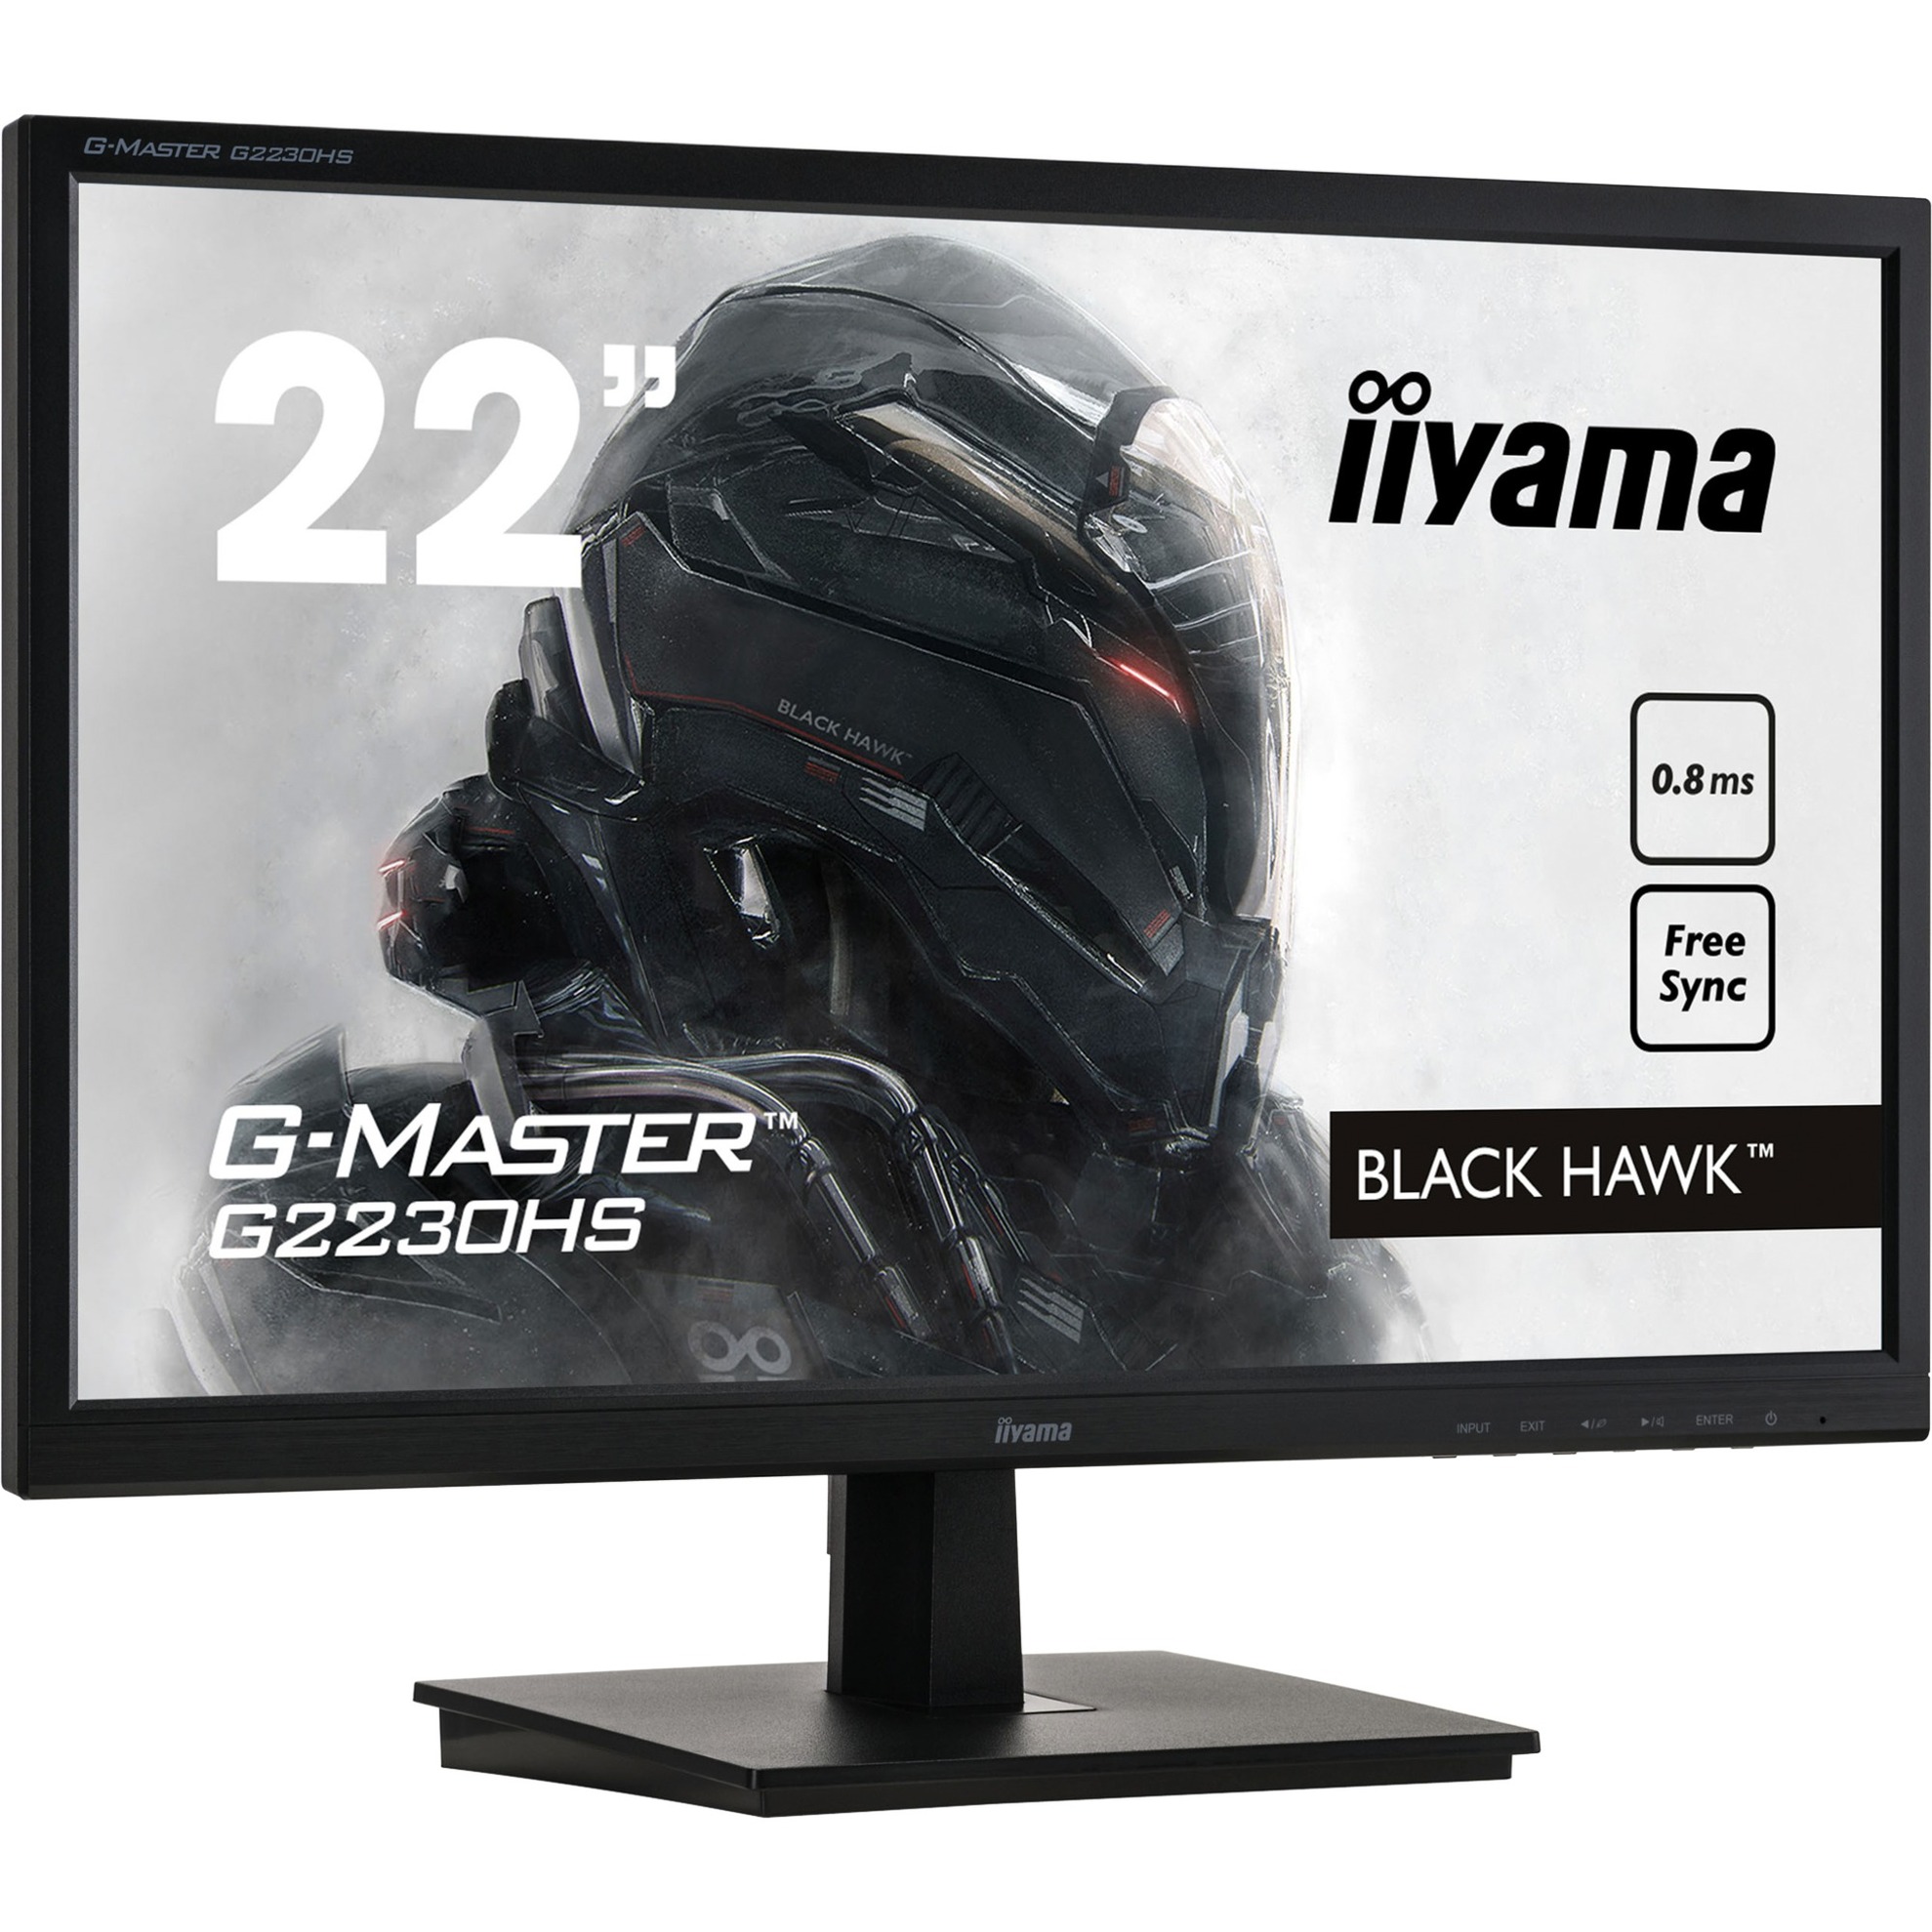 Image of Alternate - G-Master G2230HS-B1, Gaming-Monitor online einkaufen bei Alternate